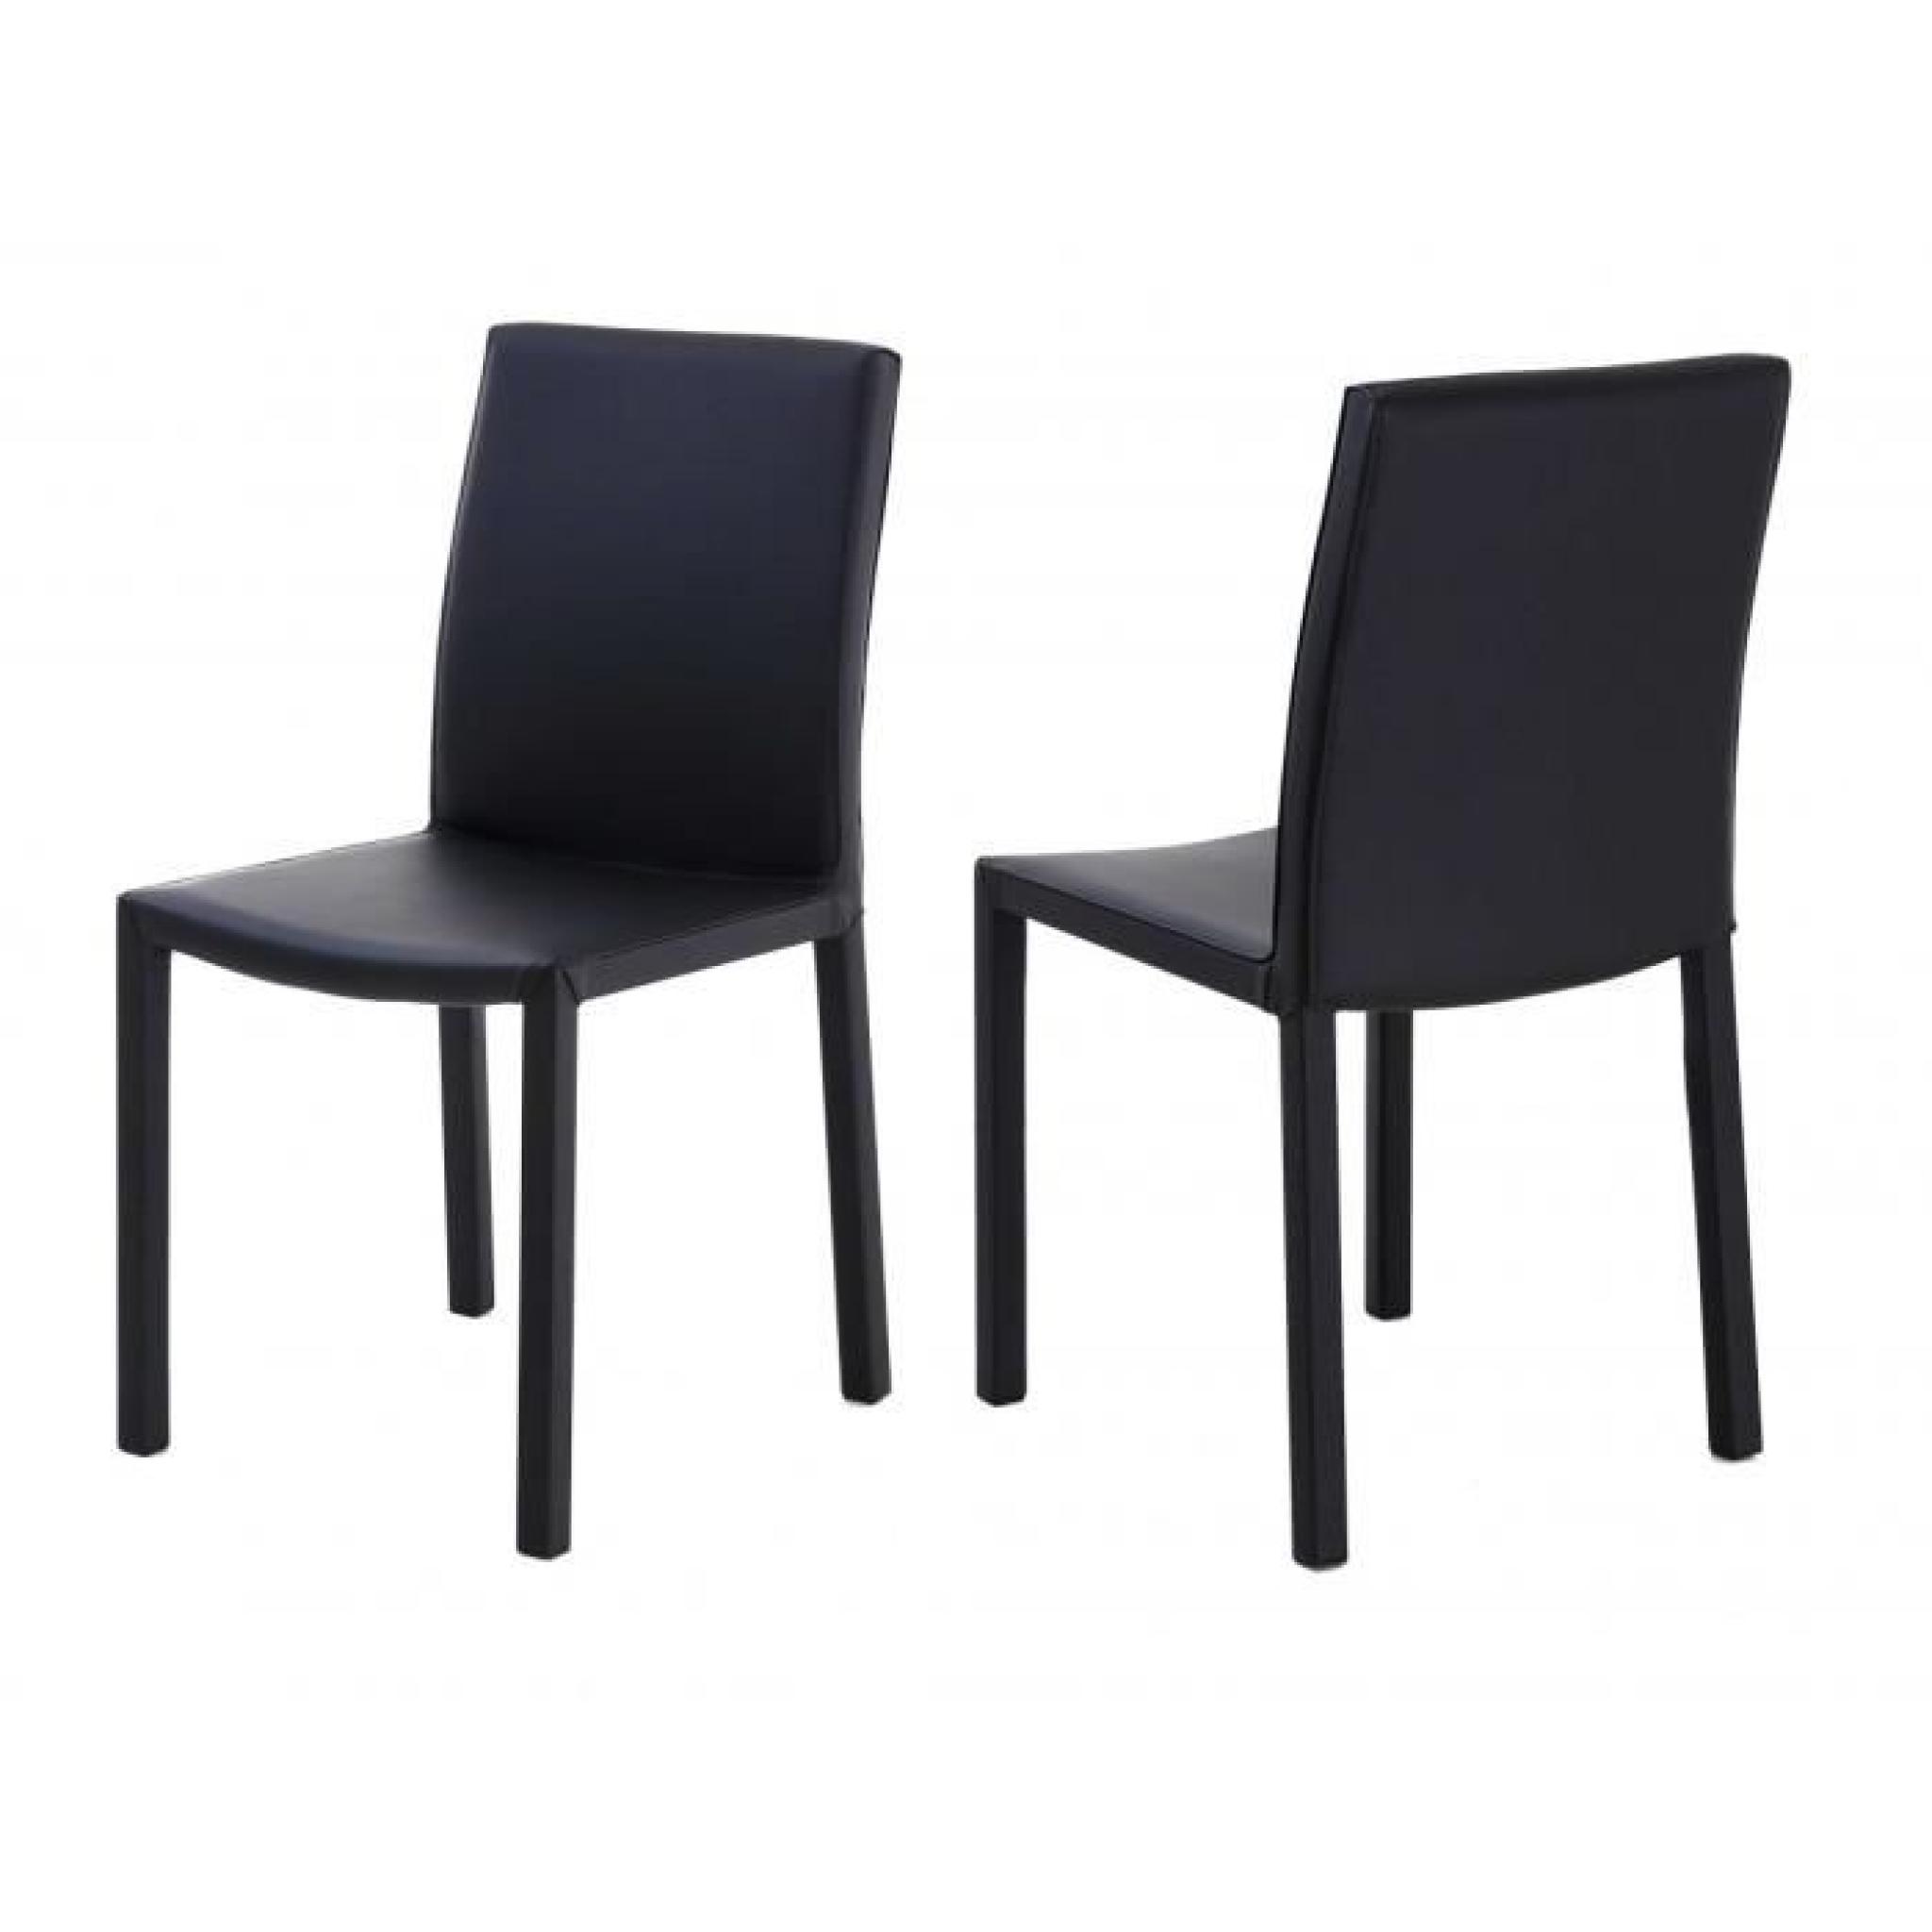 2x Chaise design noire Nunzia - Id'Click pas cher